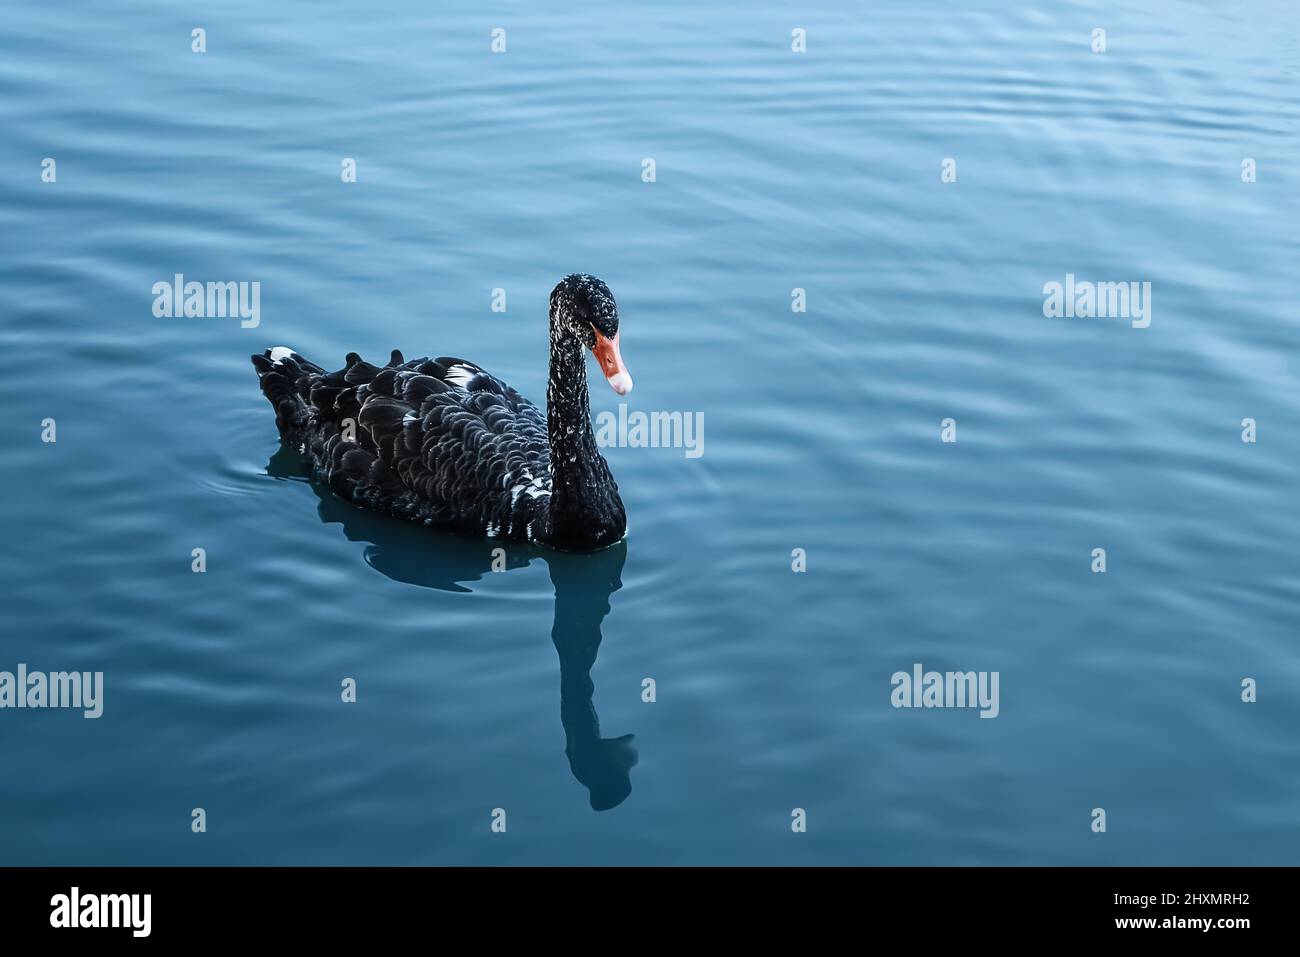 Le cygne noir flotte dans le lac bleu. Arrière-plan nature, espace de copie pour le texte Banque D'Images